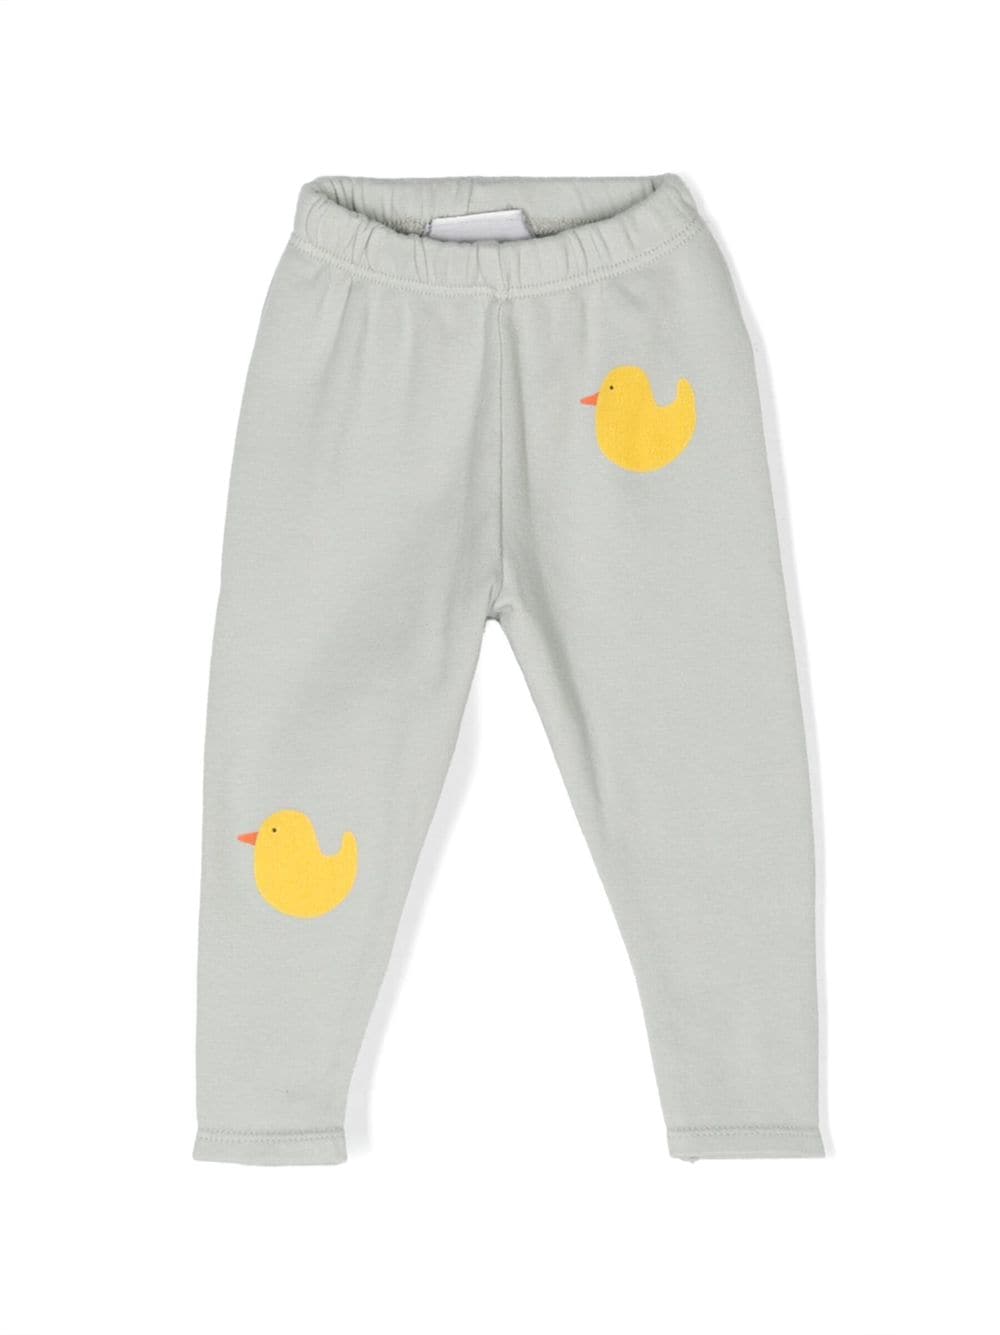 Bobo Choses duck-print cotton leggings - Grey von Bobo Choses